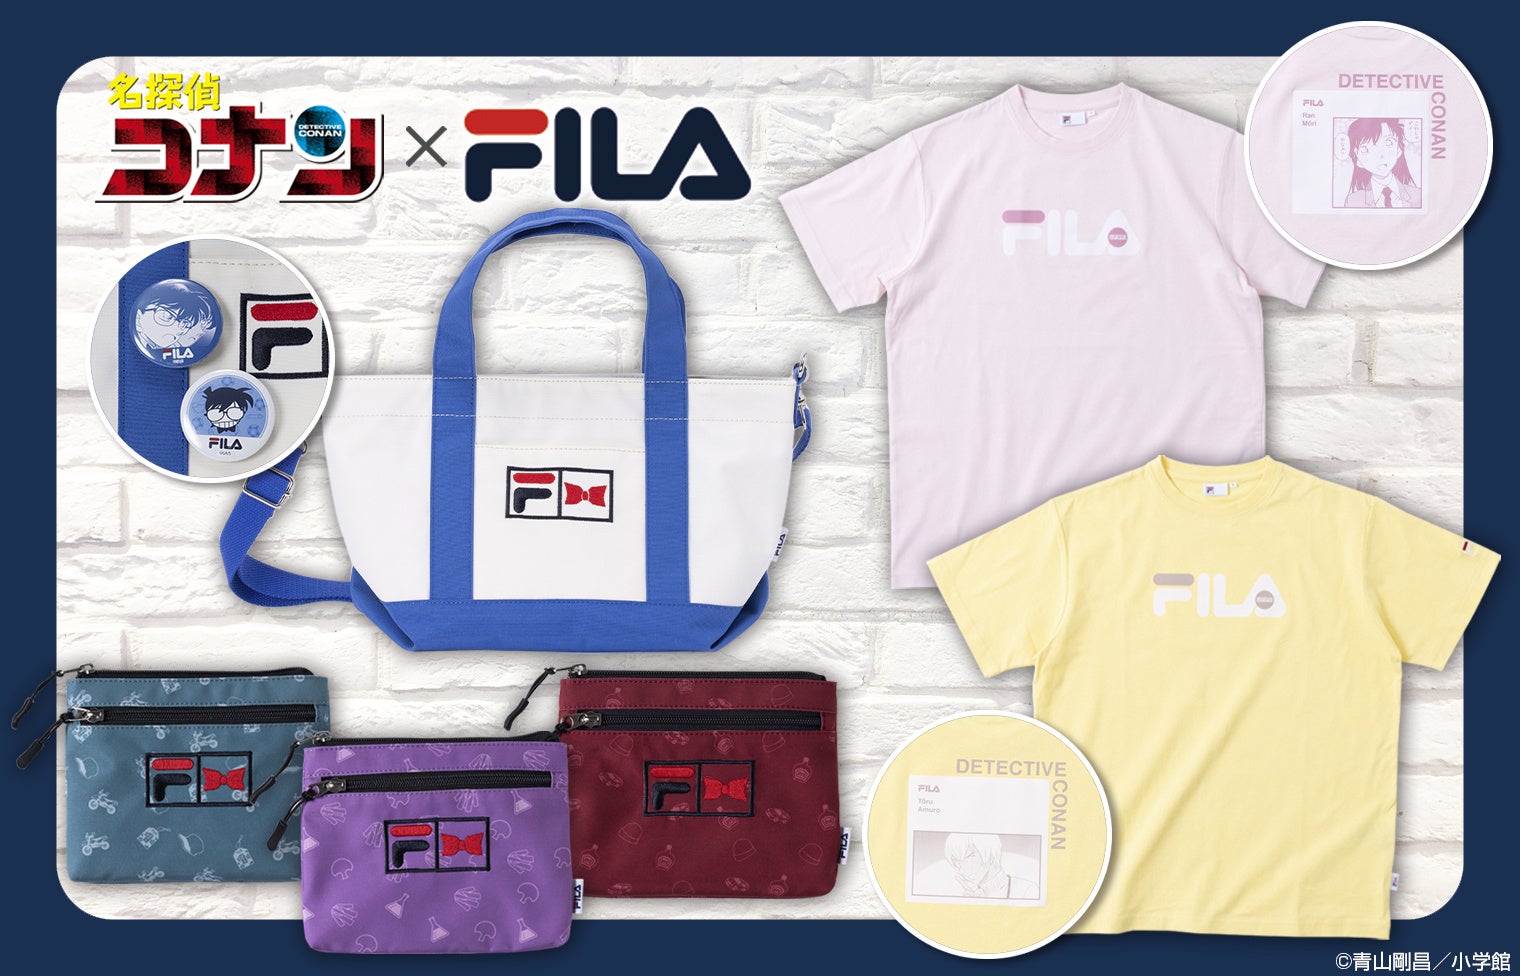 イタリア発祥のスポーツライフスタイルブランド「FILA」と『名探偵コナン』のコラボ商品が登場！